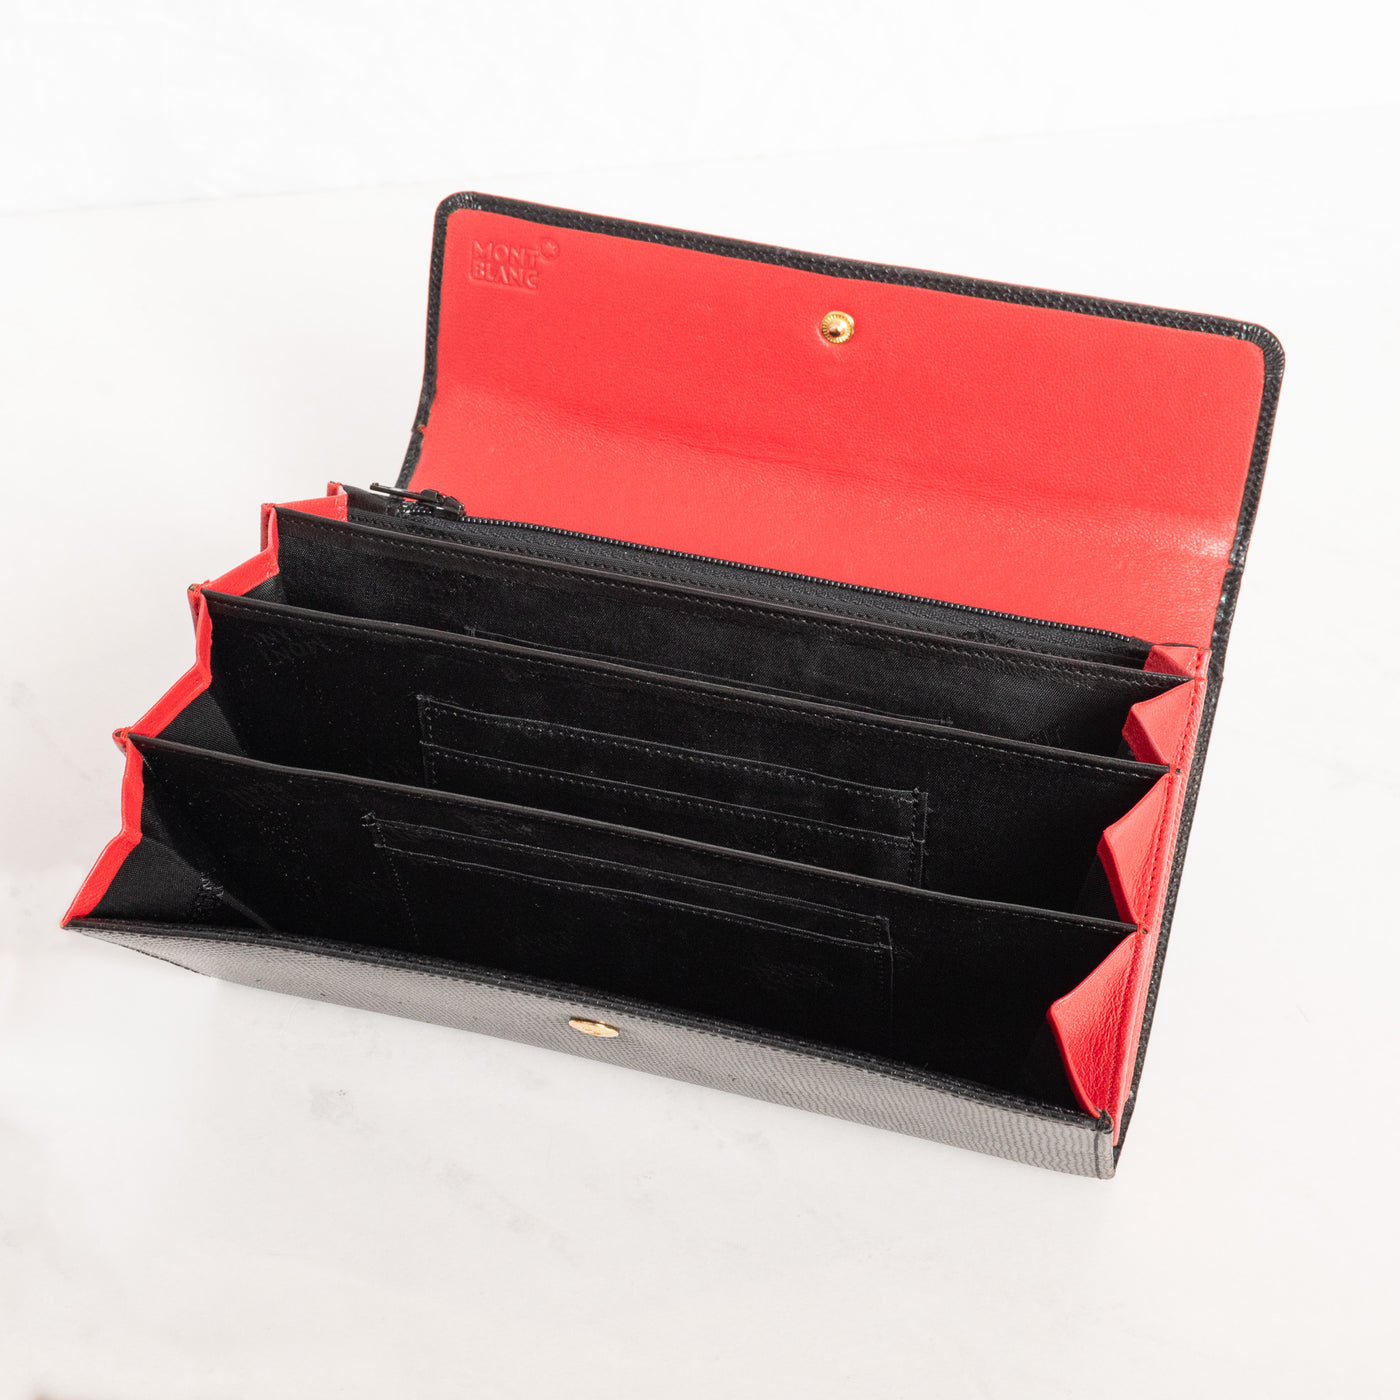 Montblanc Leather Goods La vie de Boheme Black & Red 6cc Wallet 7331 - Preowned Accordion